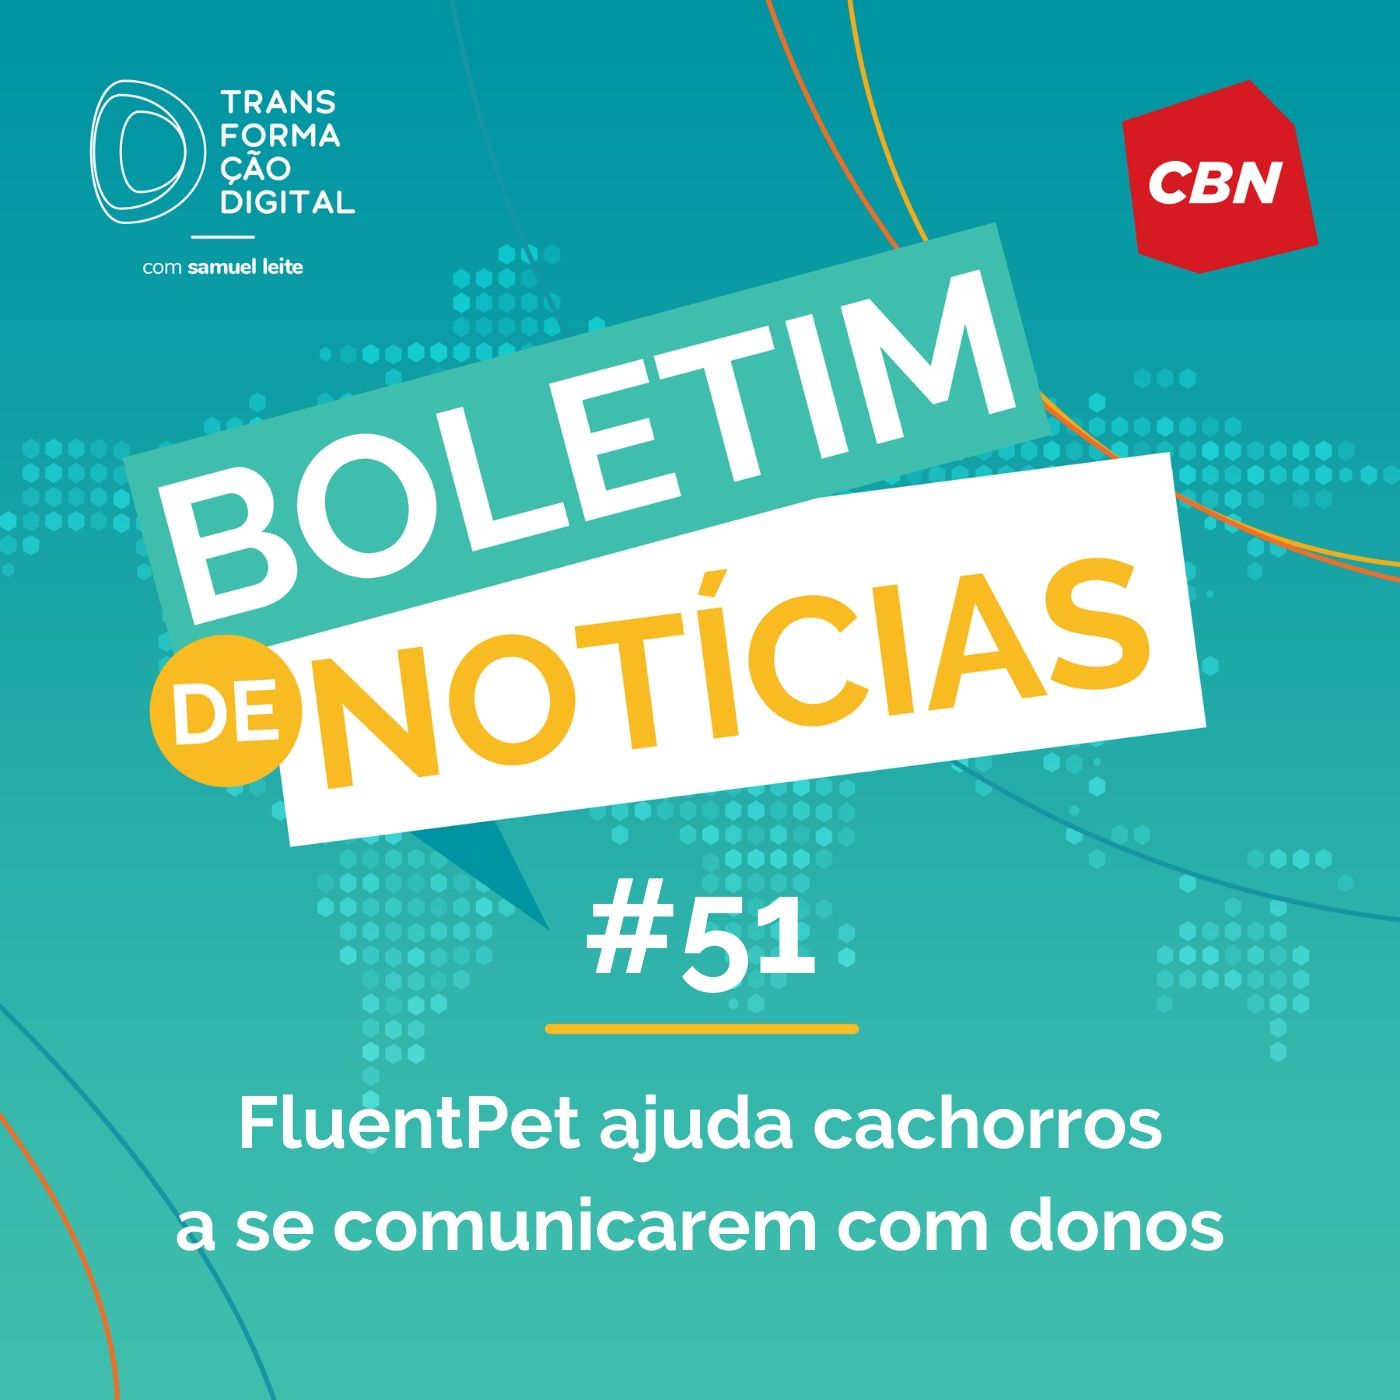 Transformação Digital CBN - Boletim de Notícias #51 - FluentPet ajuda cachorros a se comunicarem com donos